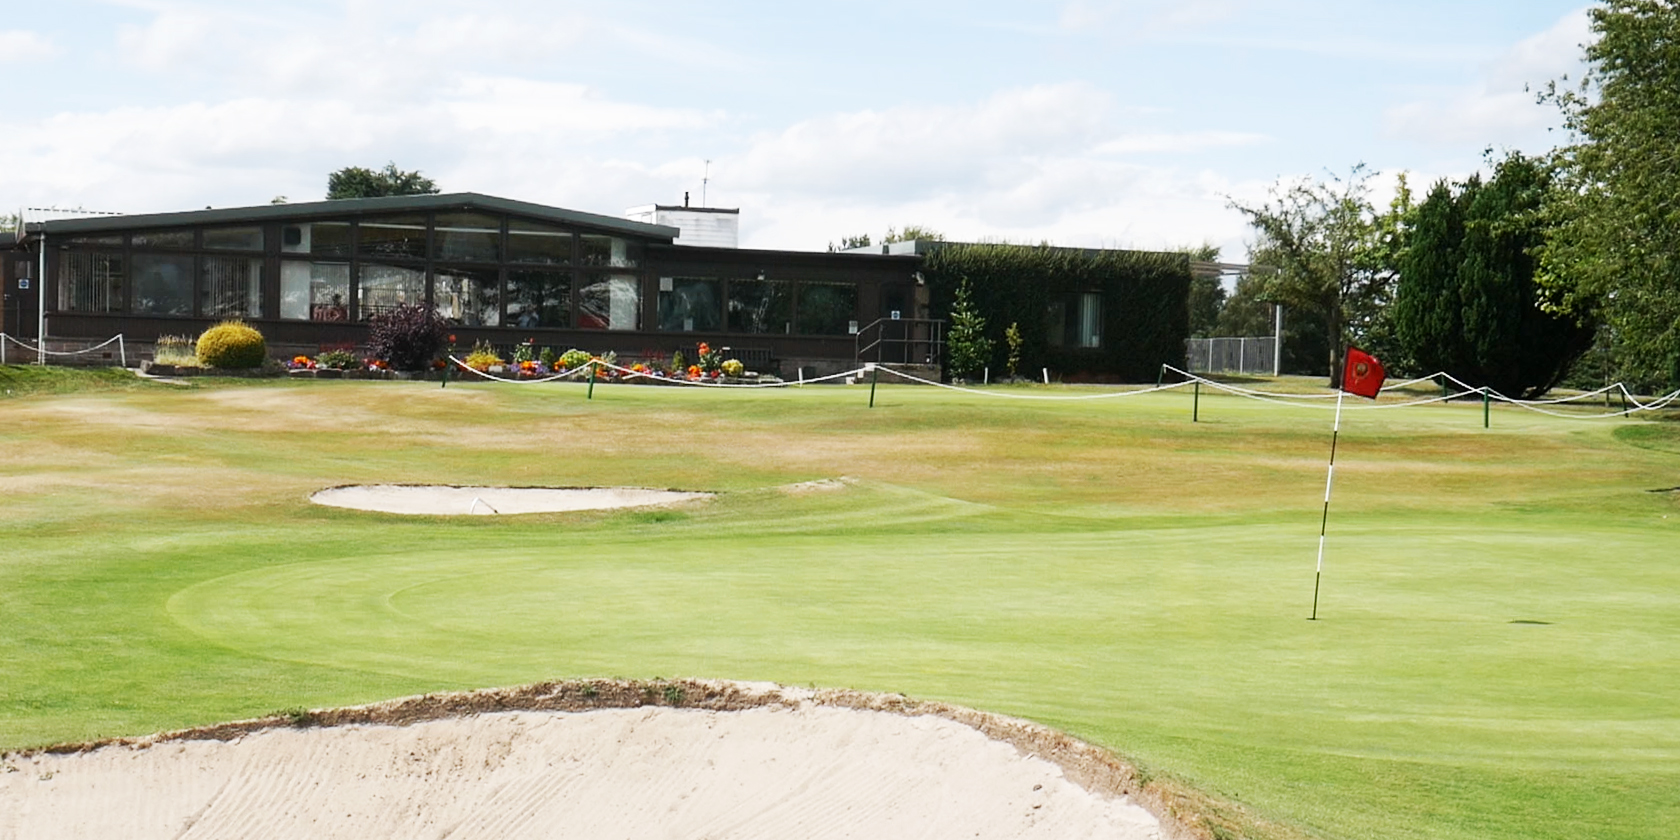 The Home of Golf - Bathgate Golf Club - West Lothian 